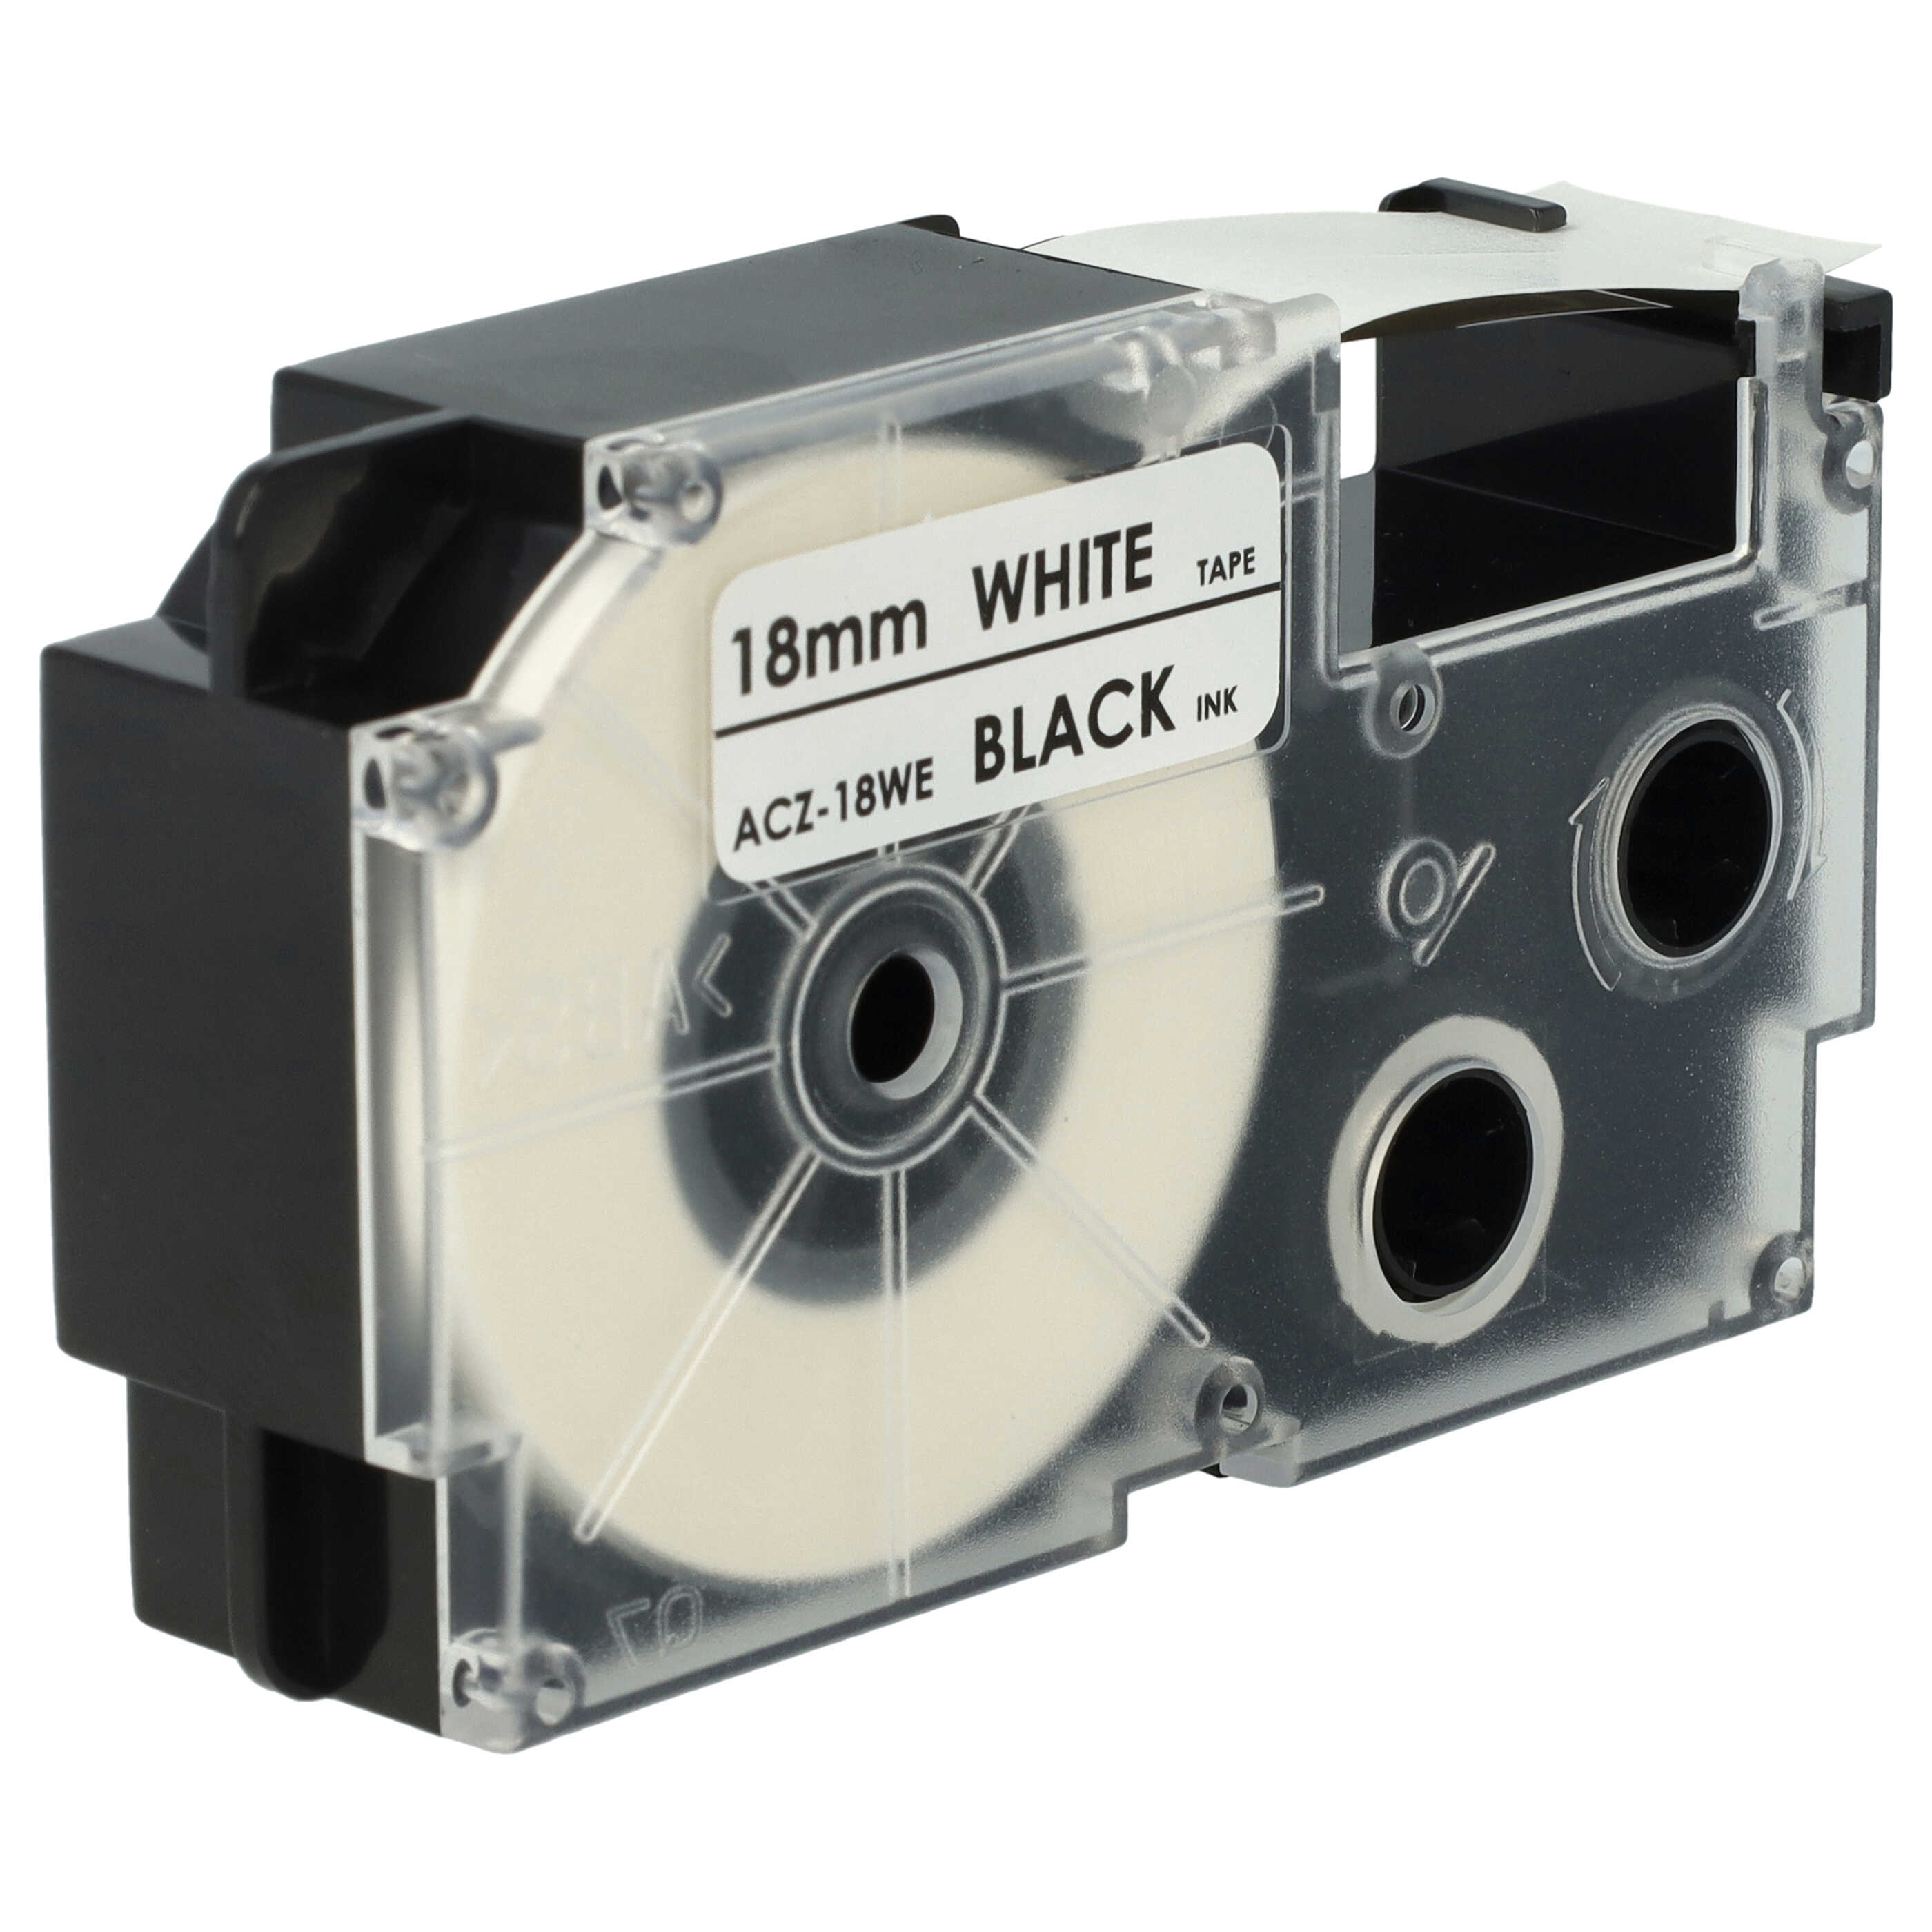 Cassette à ruban remplace Casio XR-18WE, XR-18WE1 - 18mm lettrage Noir ruban Blanc, pet+ RESIN